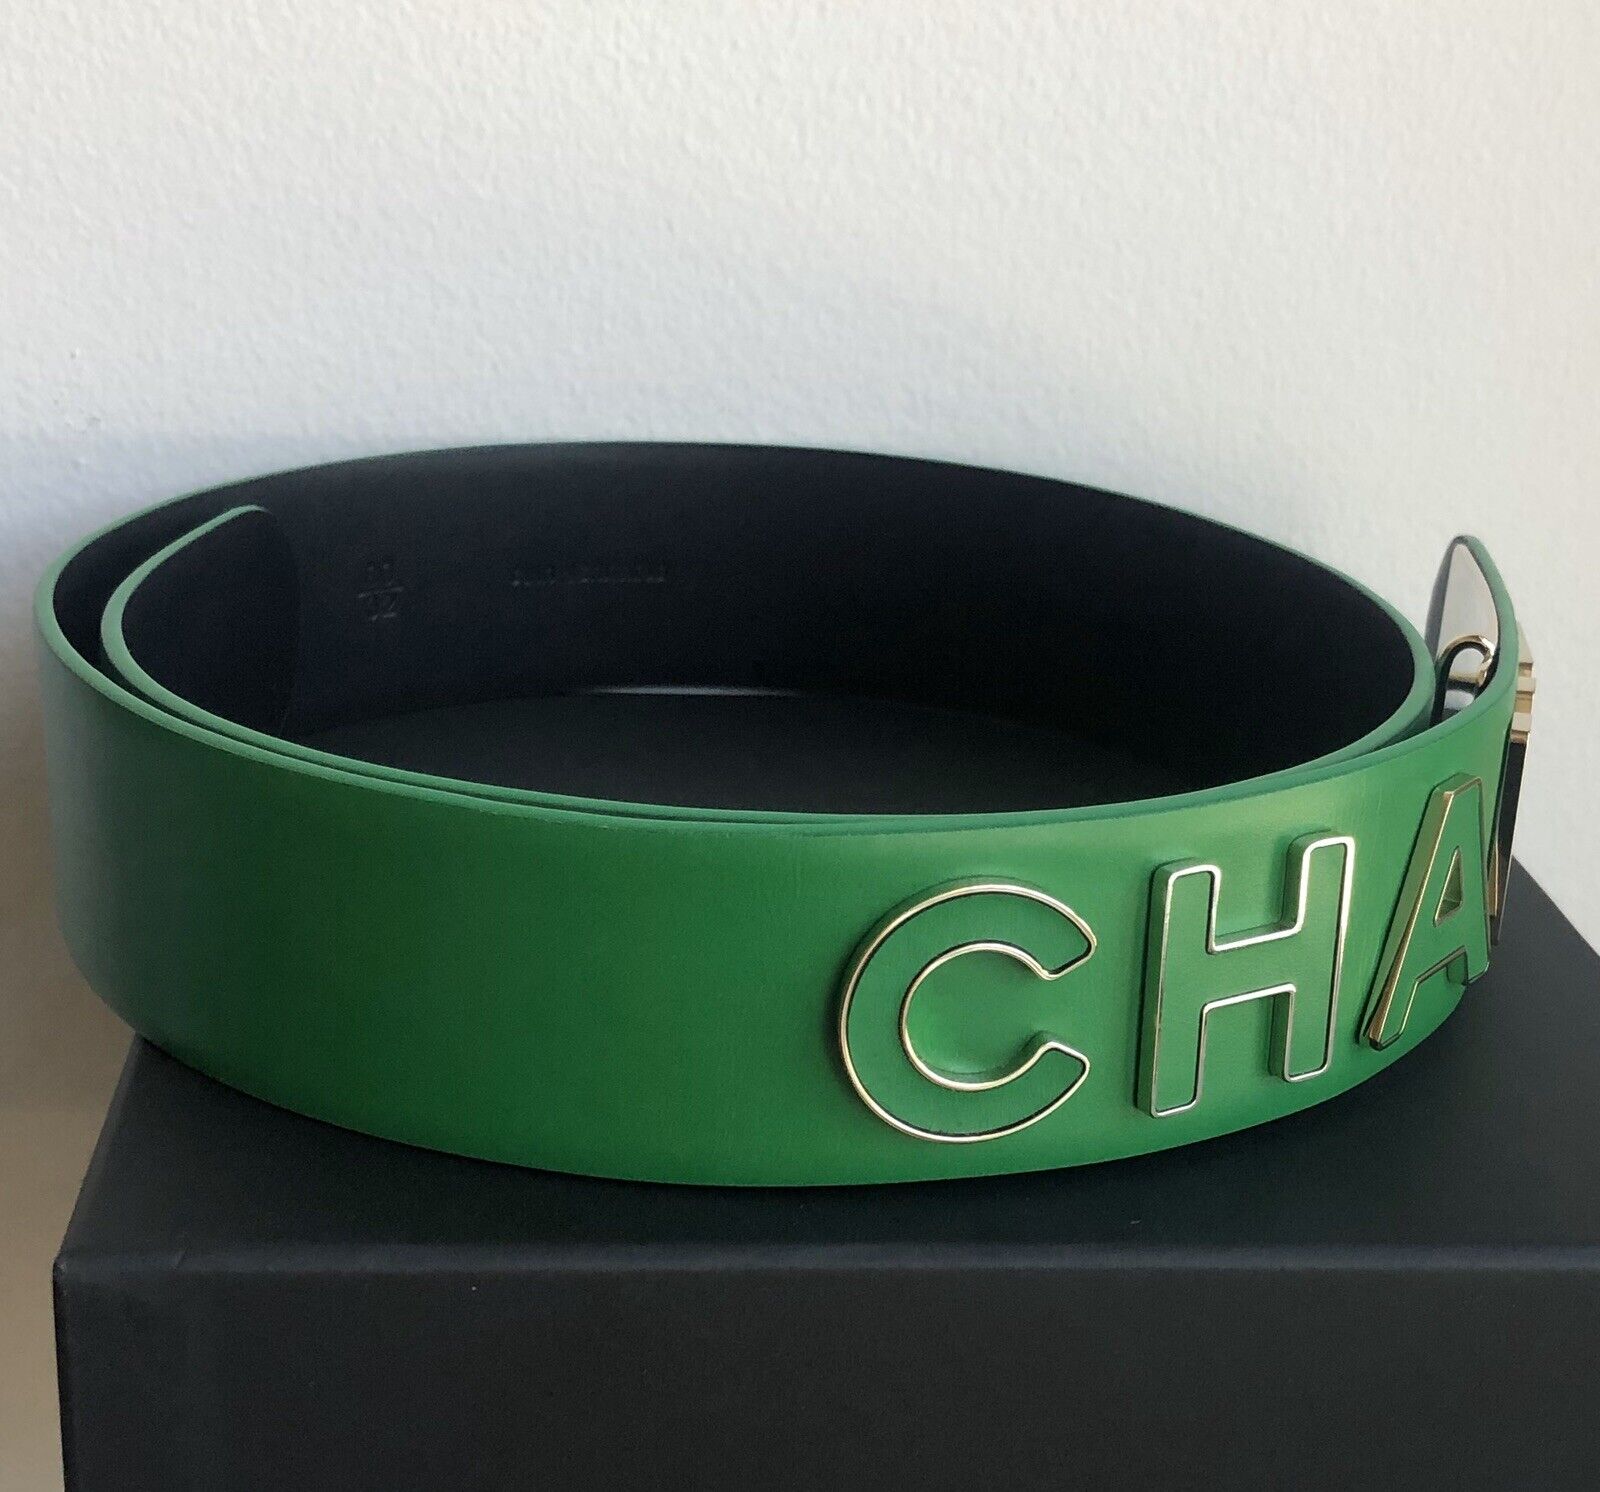 CHANEL Pharrell Emerald Leather Letter Logo Belt - Size 80/32 | eBay